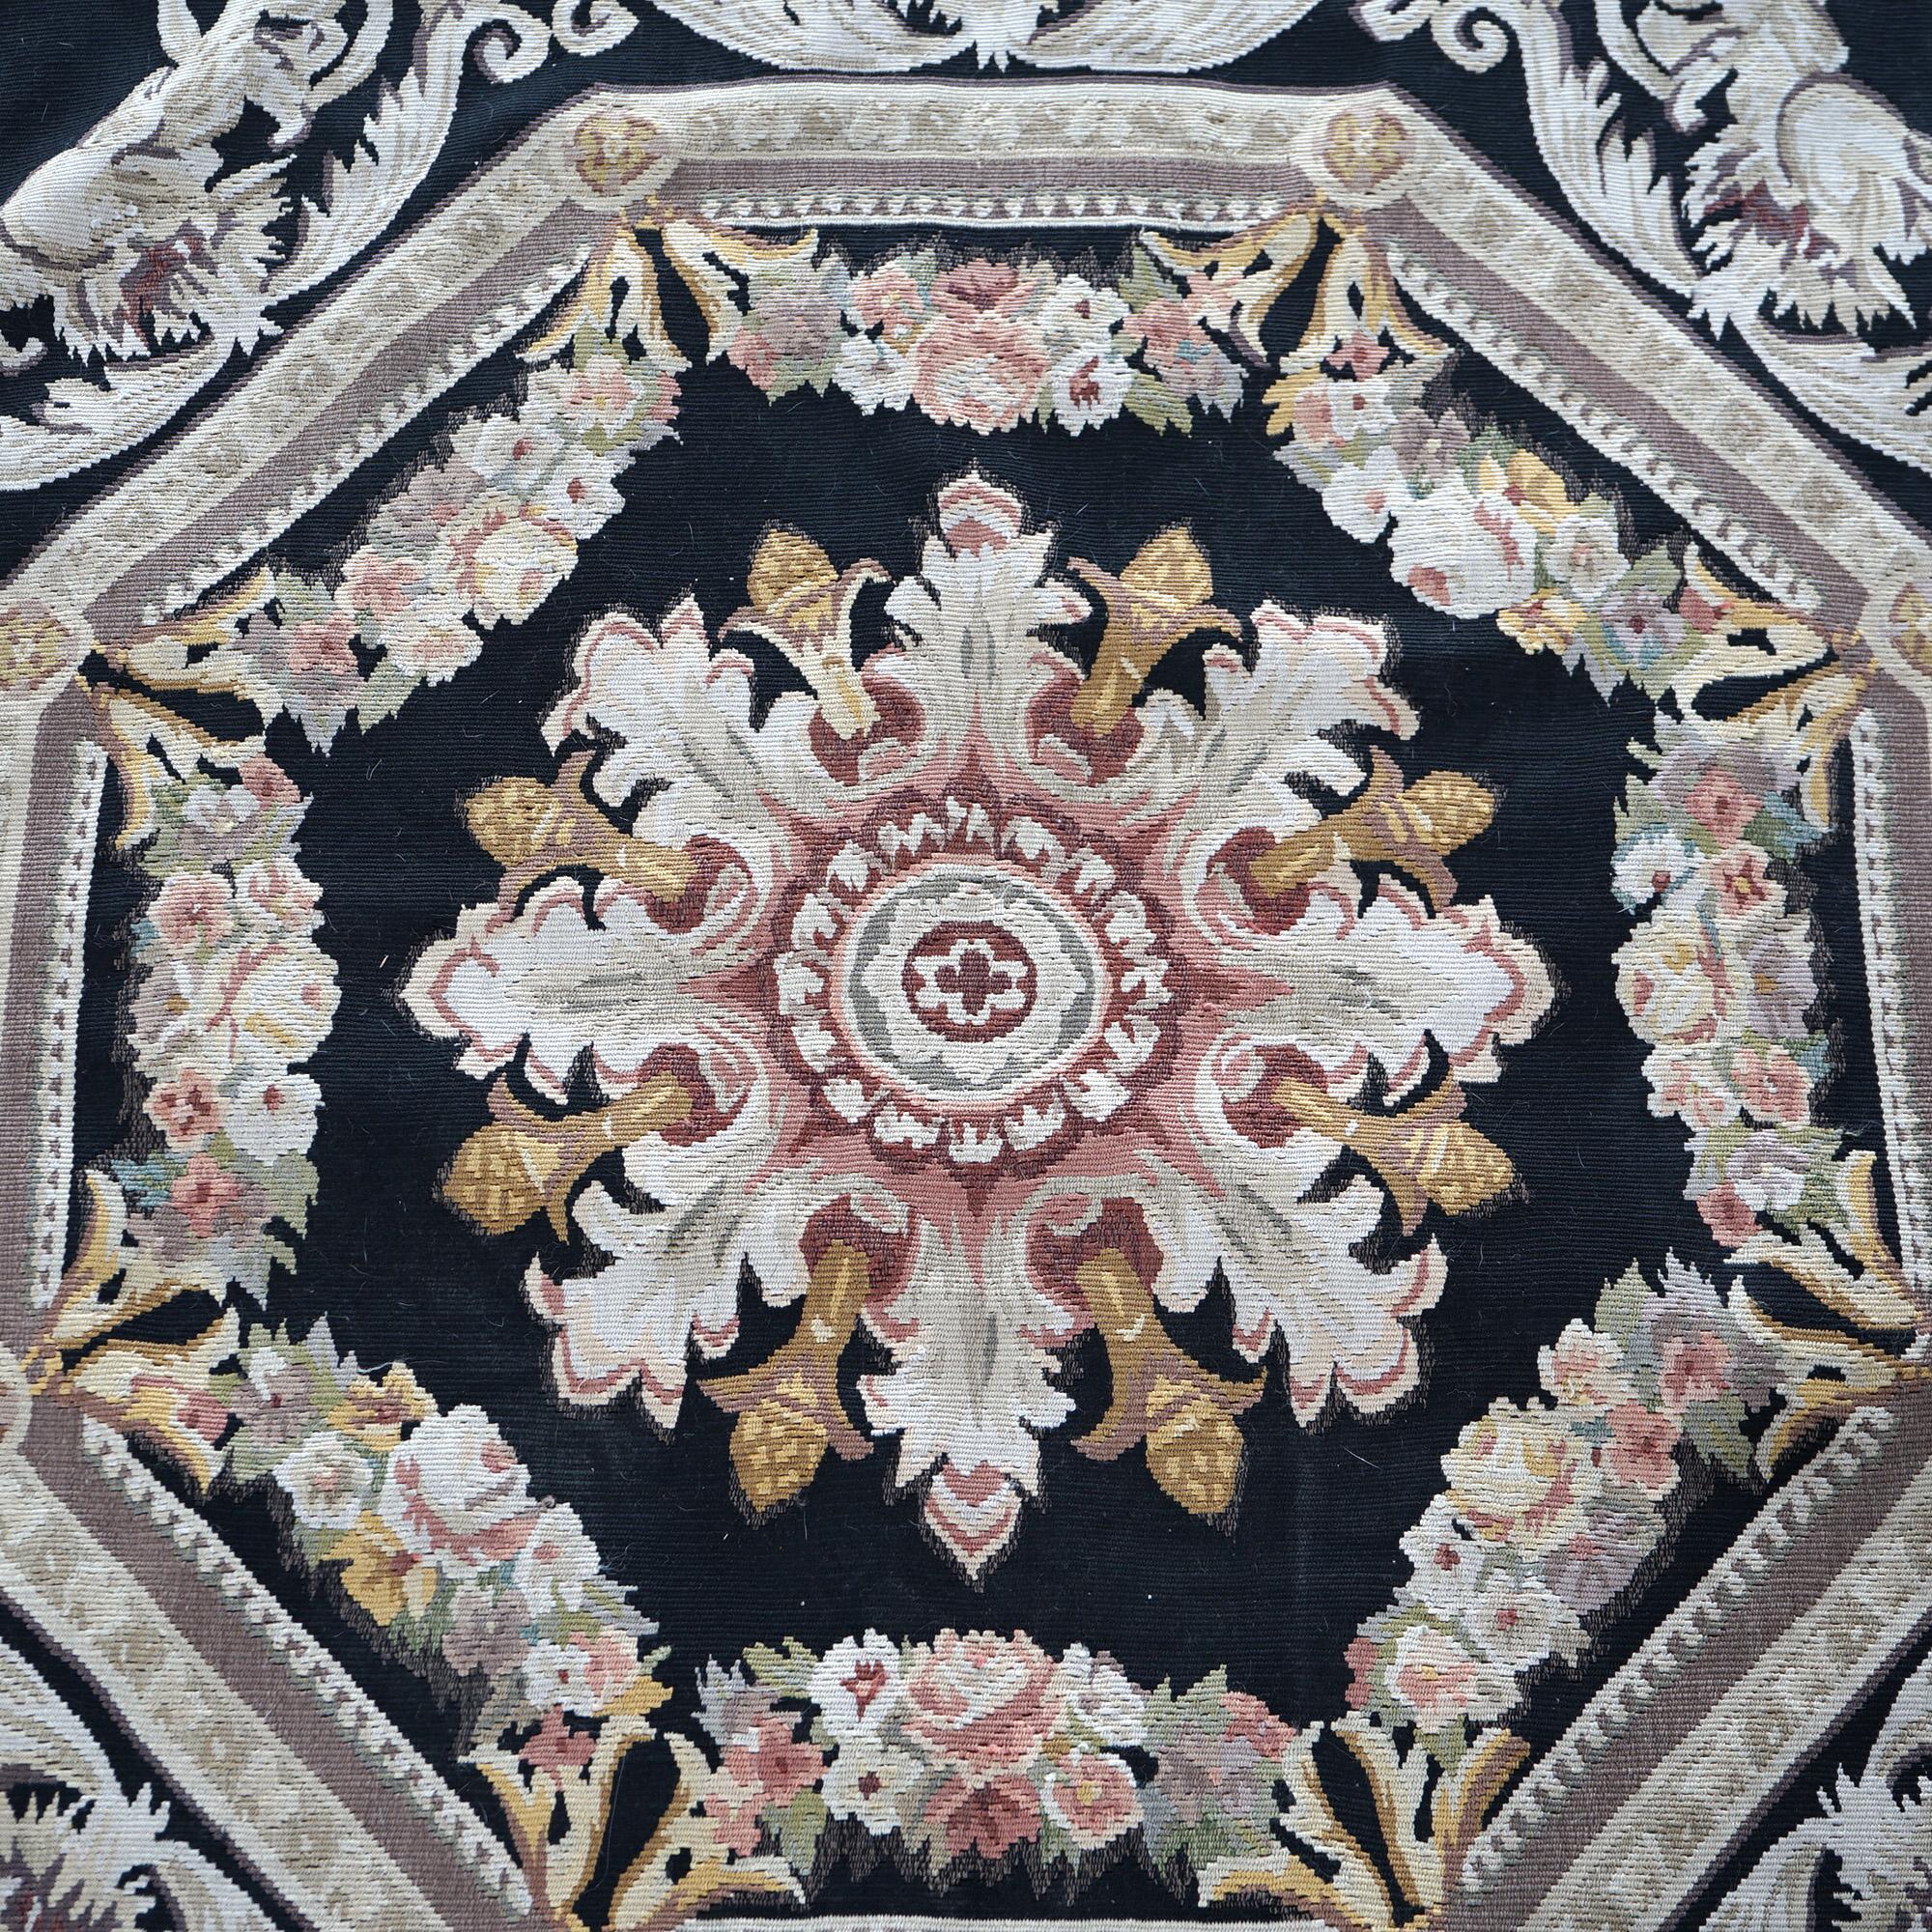 Un tapis français d'Aubusson offre une construction à l'aiguille en laine avec des motifs en relief.  médaillon central et éléments feuillagés sur l'ensemble, C.I.C.

Mesures - 98